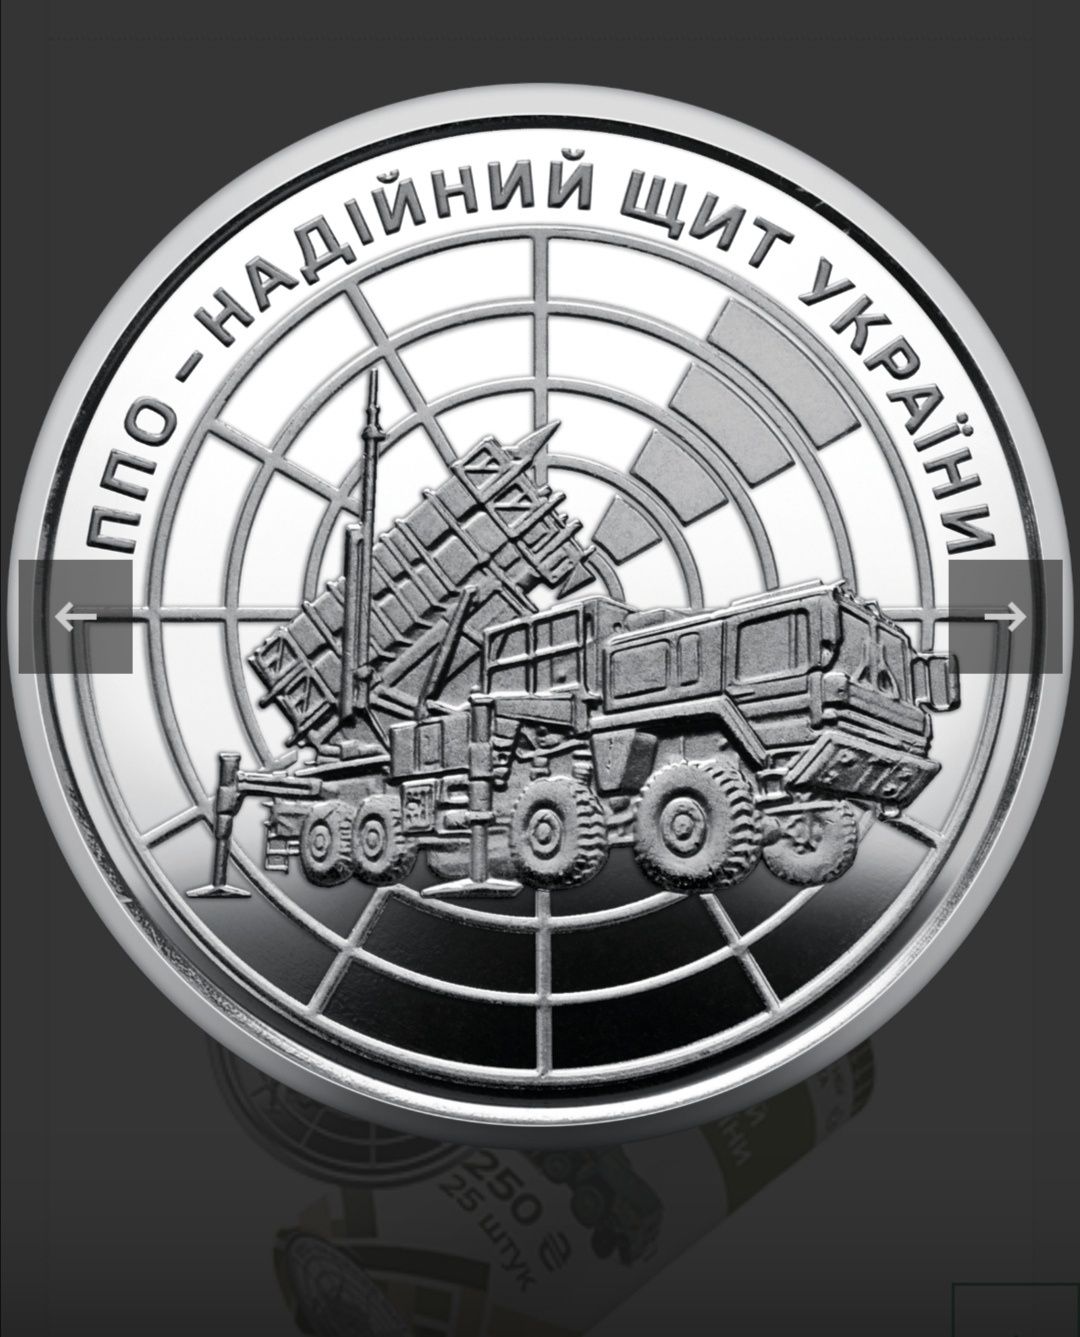 Рол обігових монет " ППО - надійний щит України "